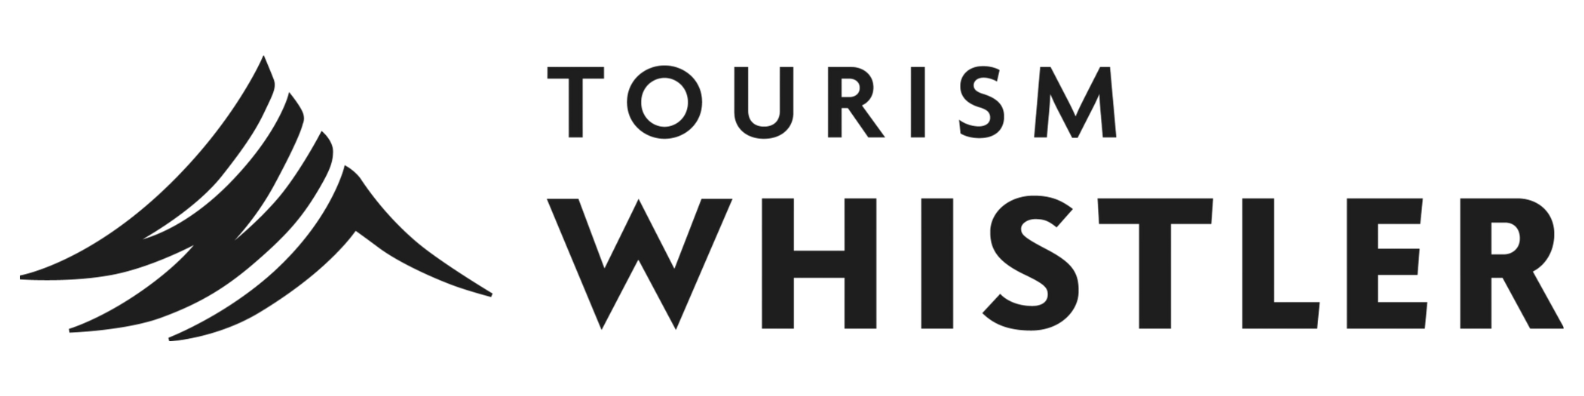 Tourism Whistler Black